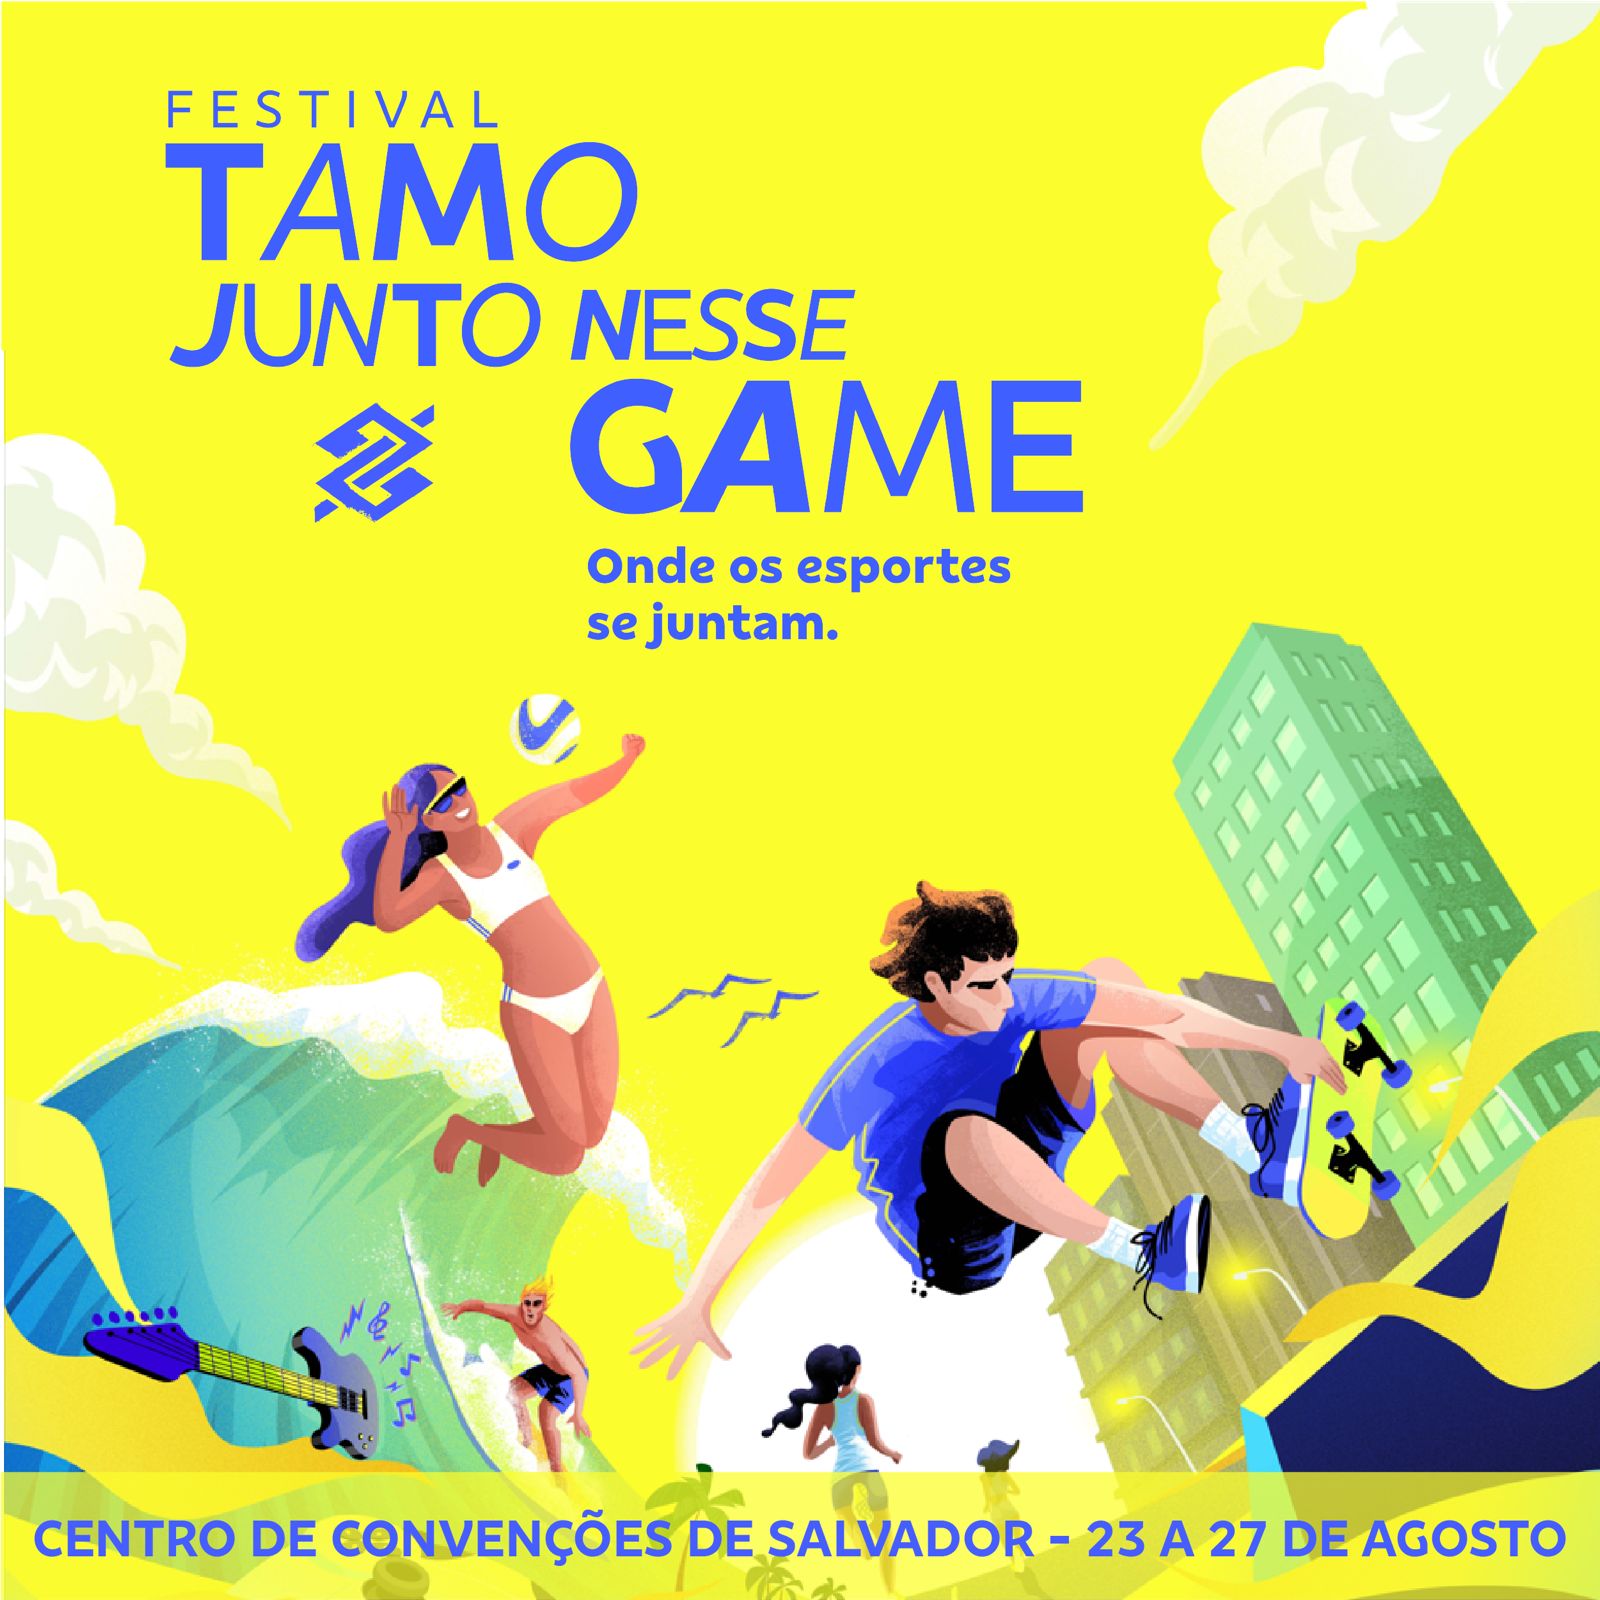 Escape games ganham força no Rio: já são 23 salas do jogo